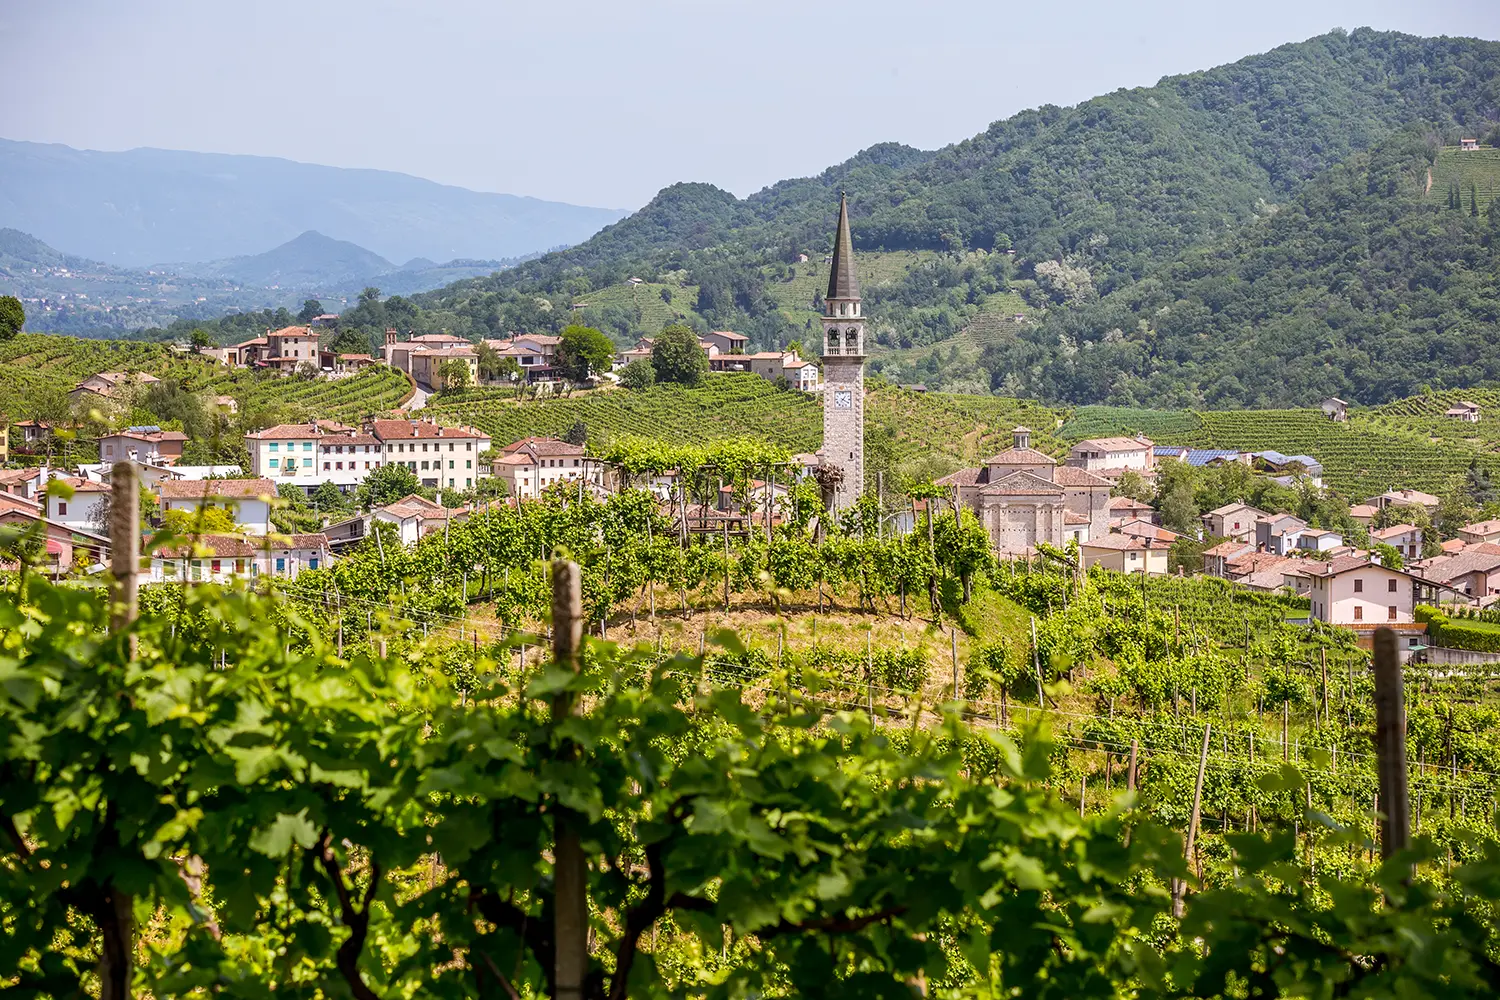 Γραφικοί λόφοι με αμπελώνες της περιοχής αφρώδους κρασιού Prosecco στο Valdobbiadene της Ιταλίας.